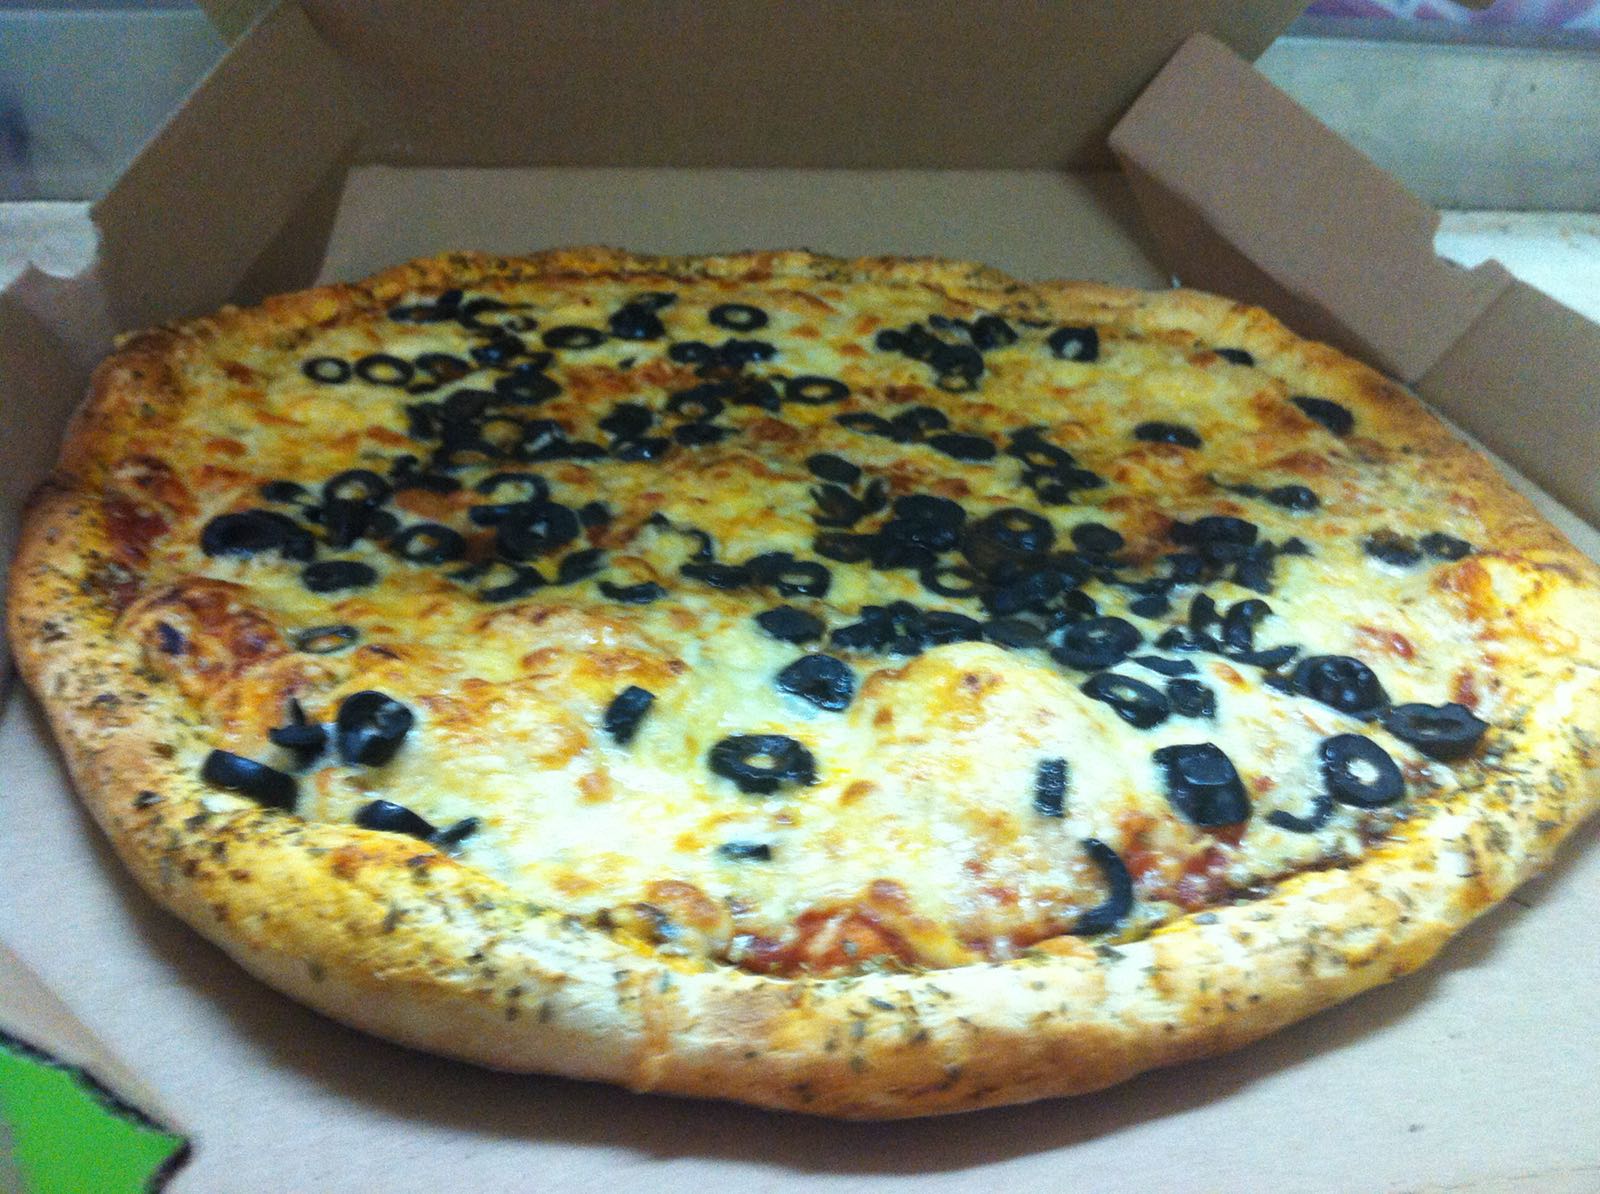  يافا: حملة تخفيضات جديدة في بيتزا اوليف مع أشهى انوع البيتزا والمعجنات